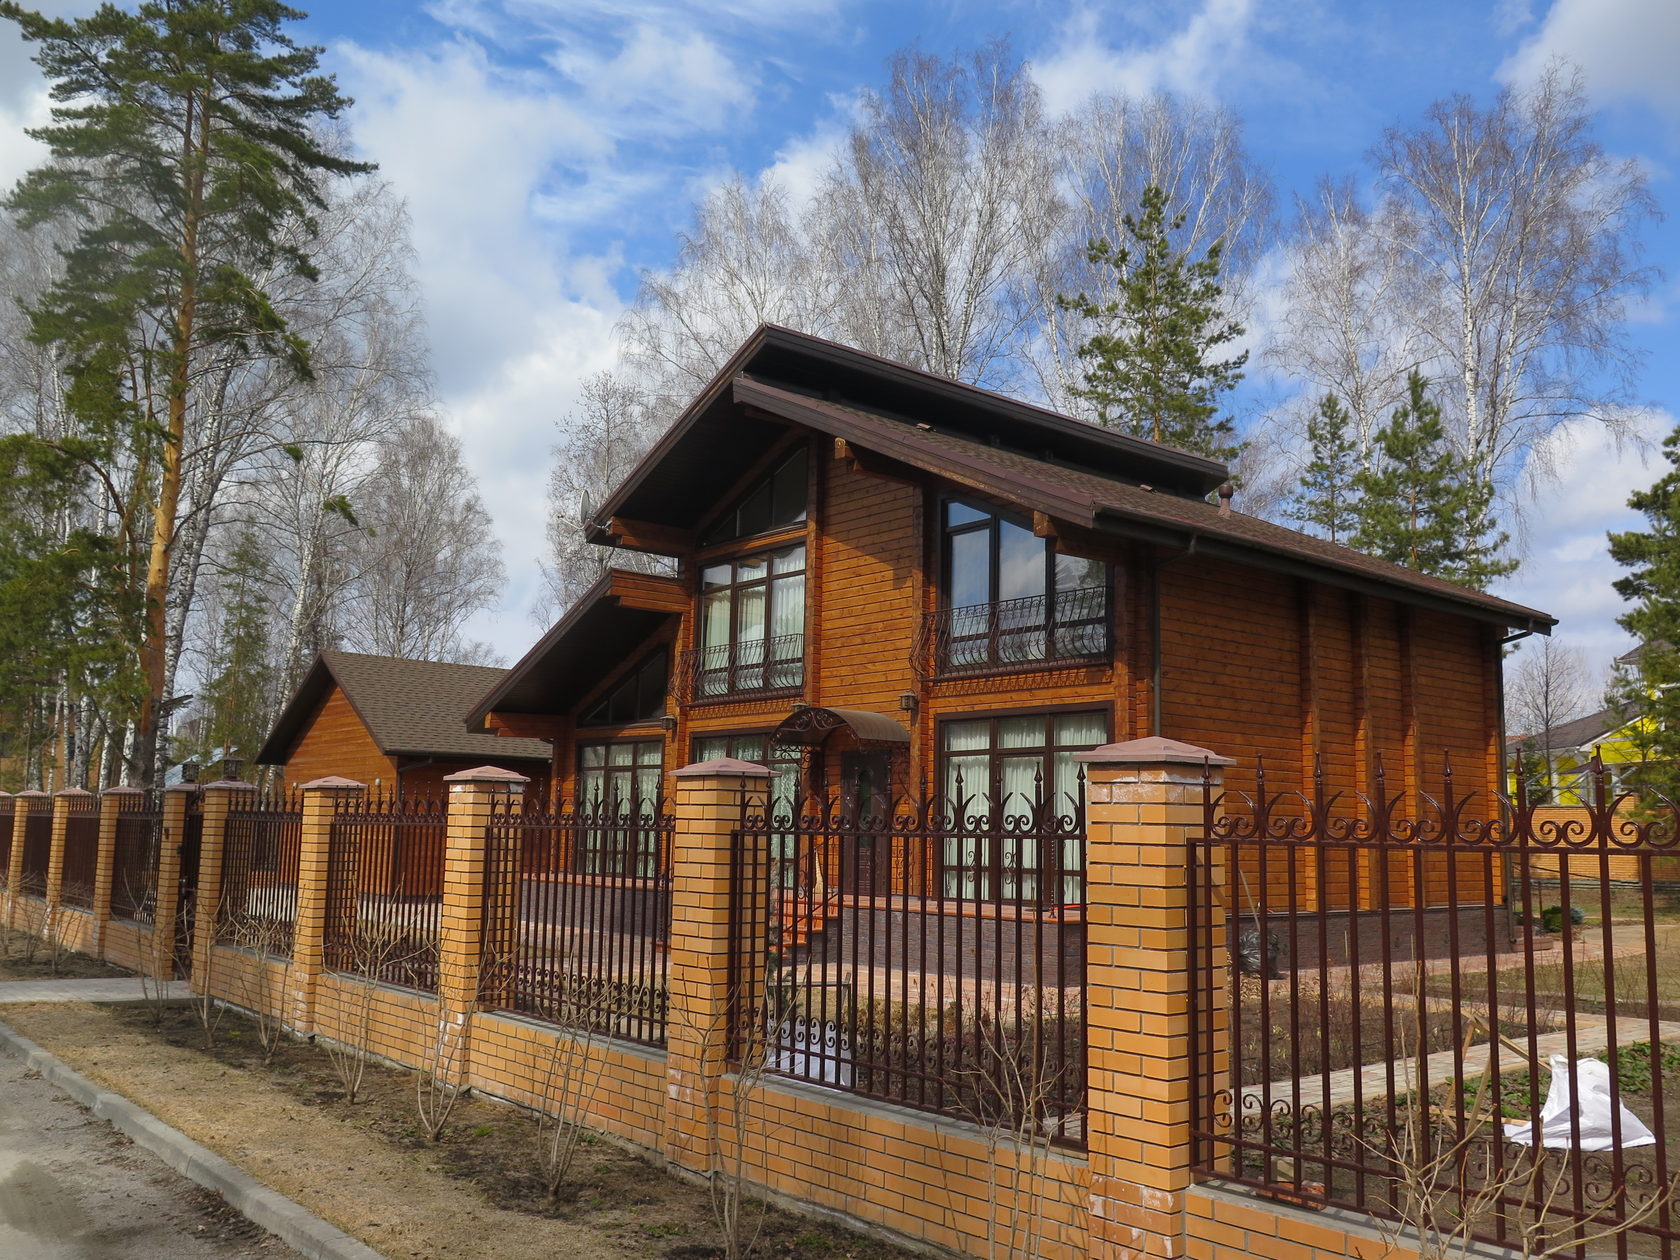 Дом под ключ в новосибирске цена построить